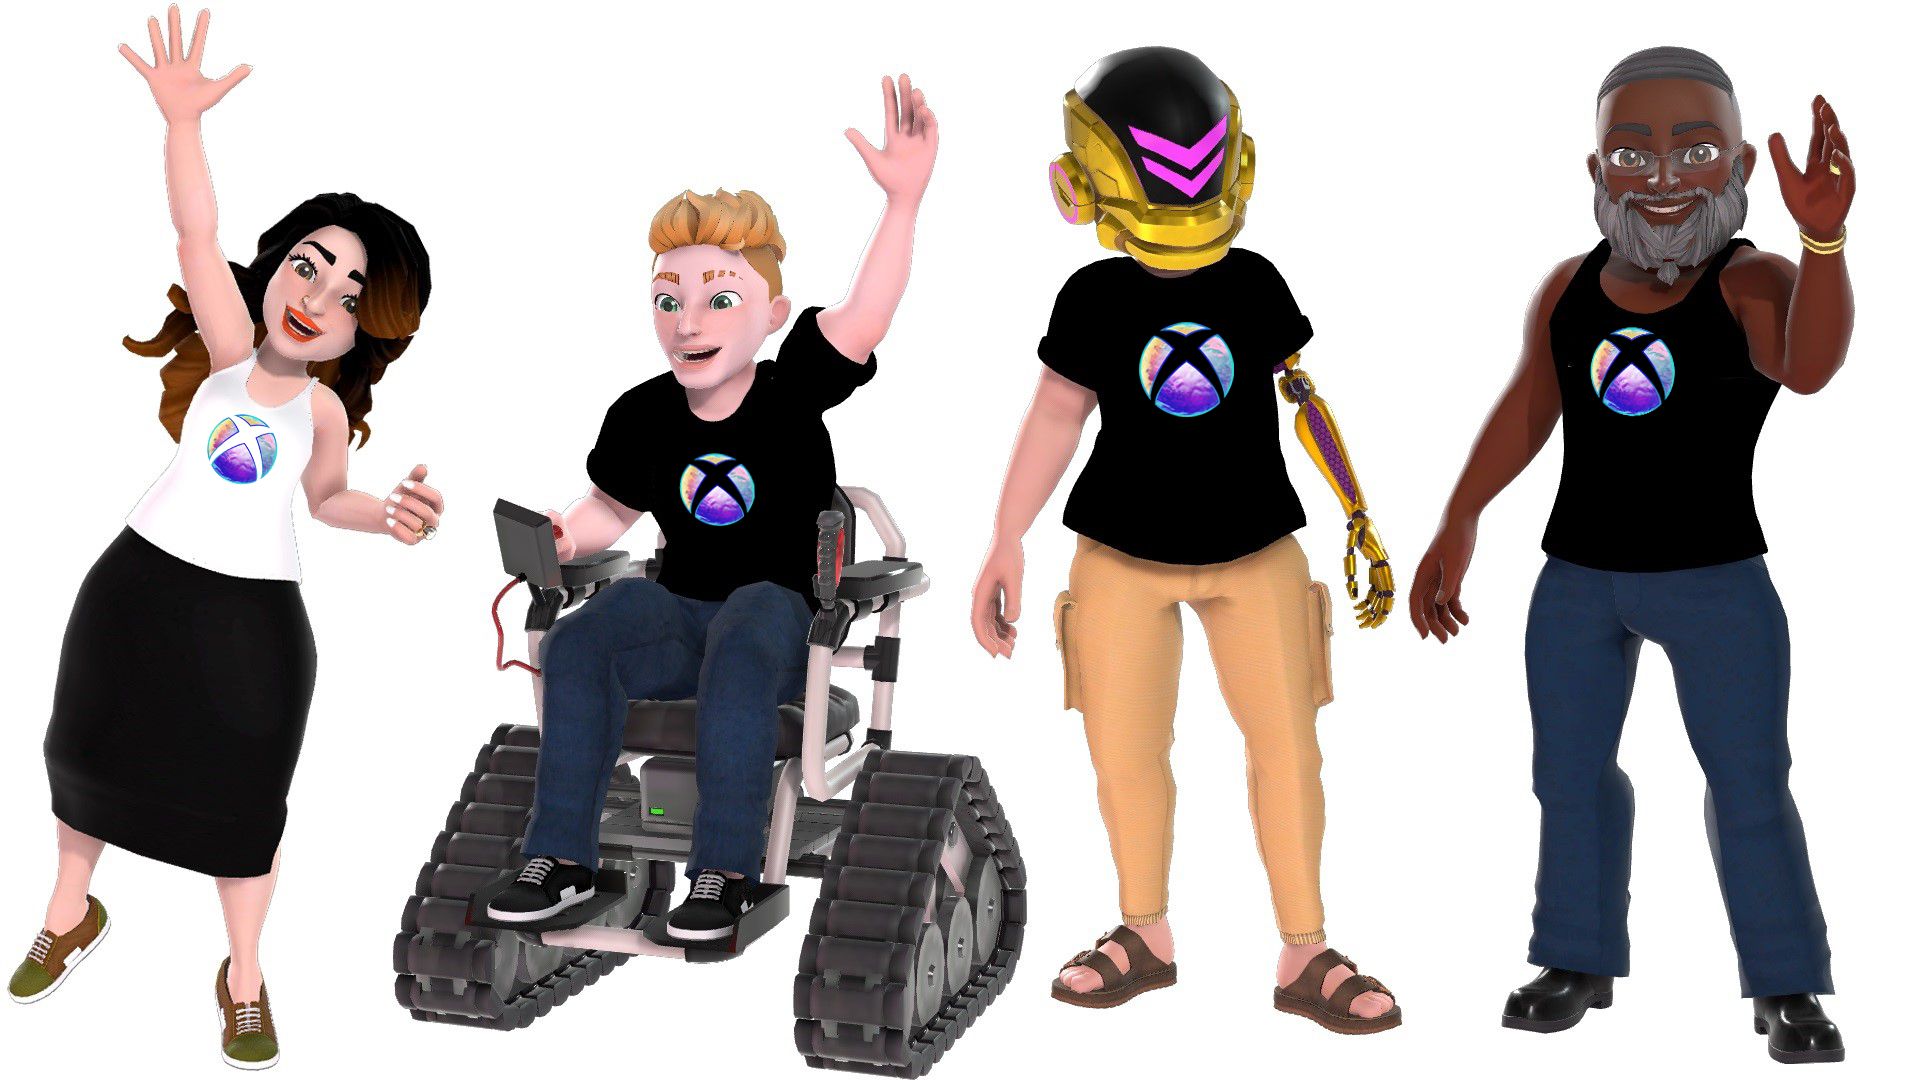 Négy avatar karakter, amelyek tetején újratervezték az Xbox Nemzetközi Nőnap emblémáját, amelyen az Xbox gömbje lila, rózsaszín, sárga és zöld, valamint álmodozó, vízszerű textúra látható.